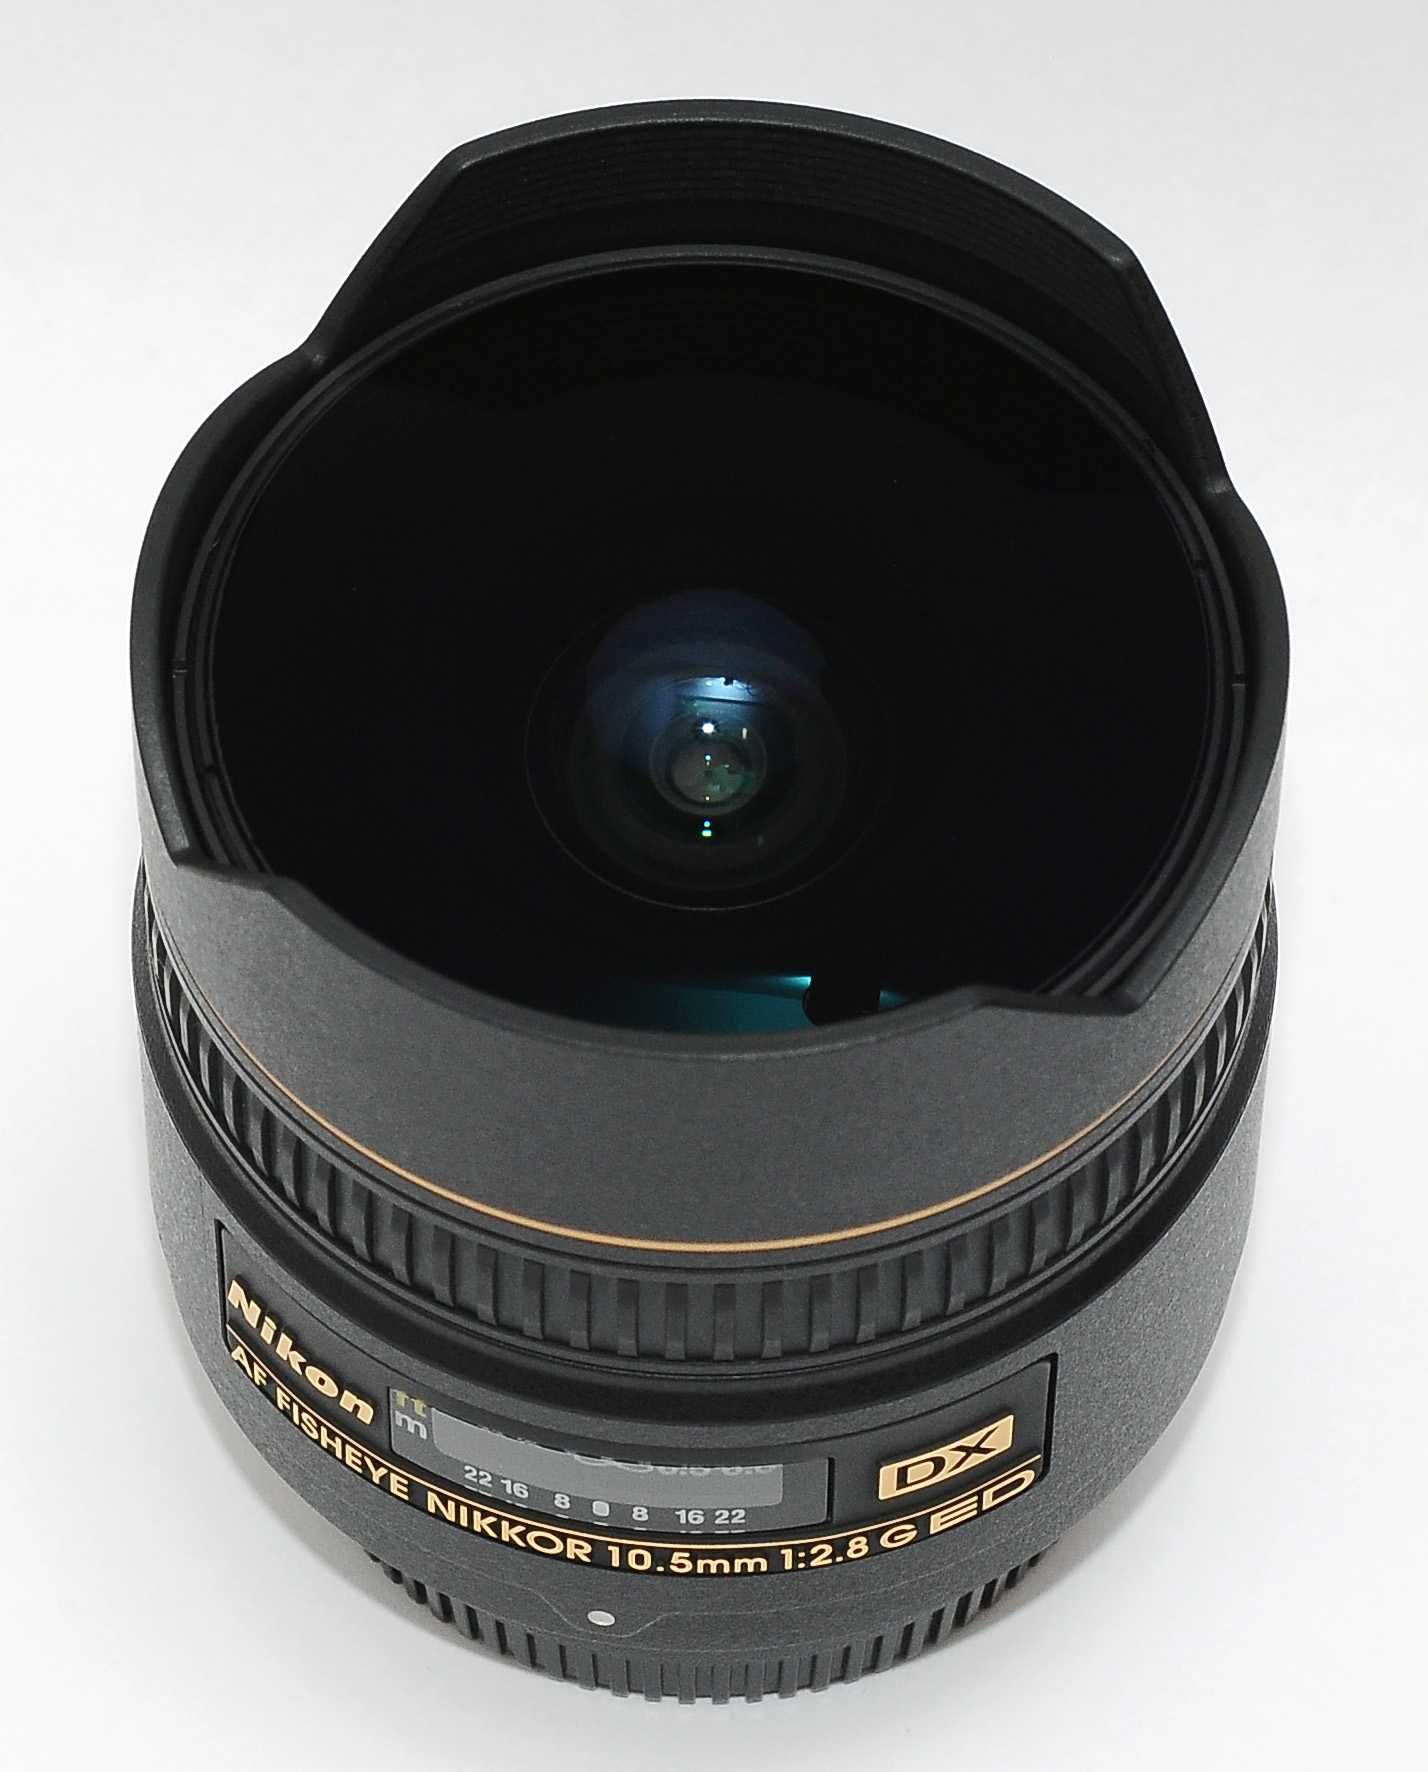 Nikon 10.5mm f/2.8 G ED AF FishEye Nikkor Фишай объектив автофокусный